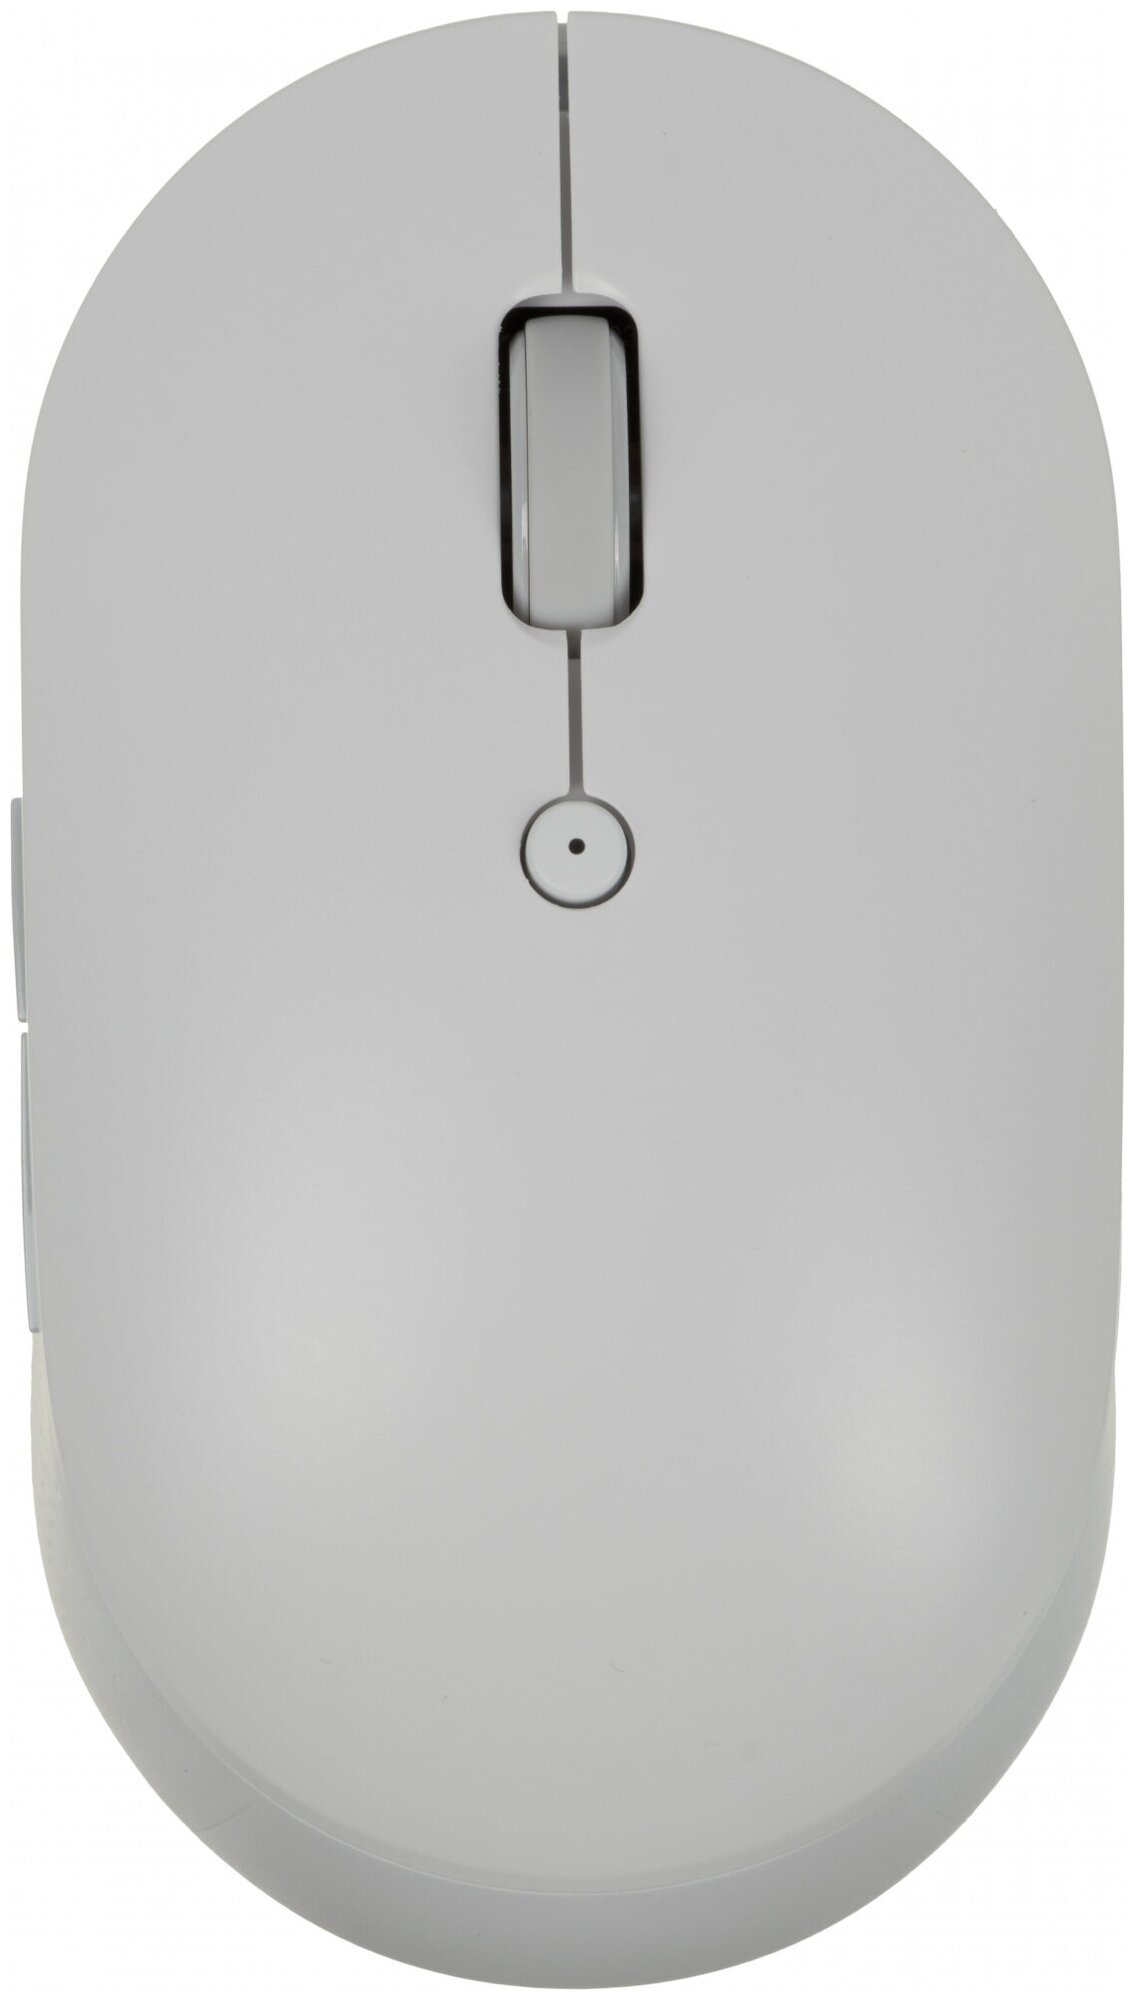 Мышь беспроводная Mi Dual Mode Wireless Mouse Silent Edition (White) WXSMSBMW02 (HLK4040GL) (715440)